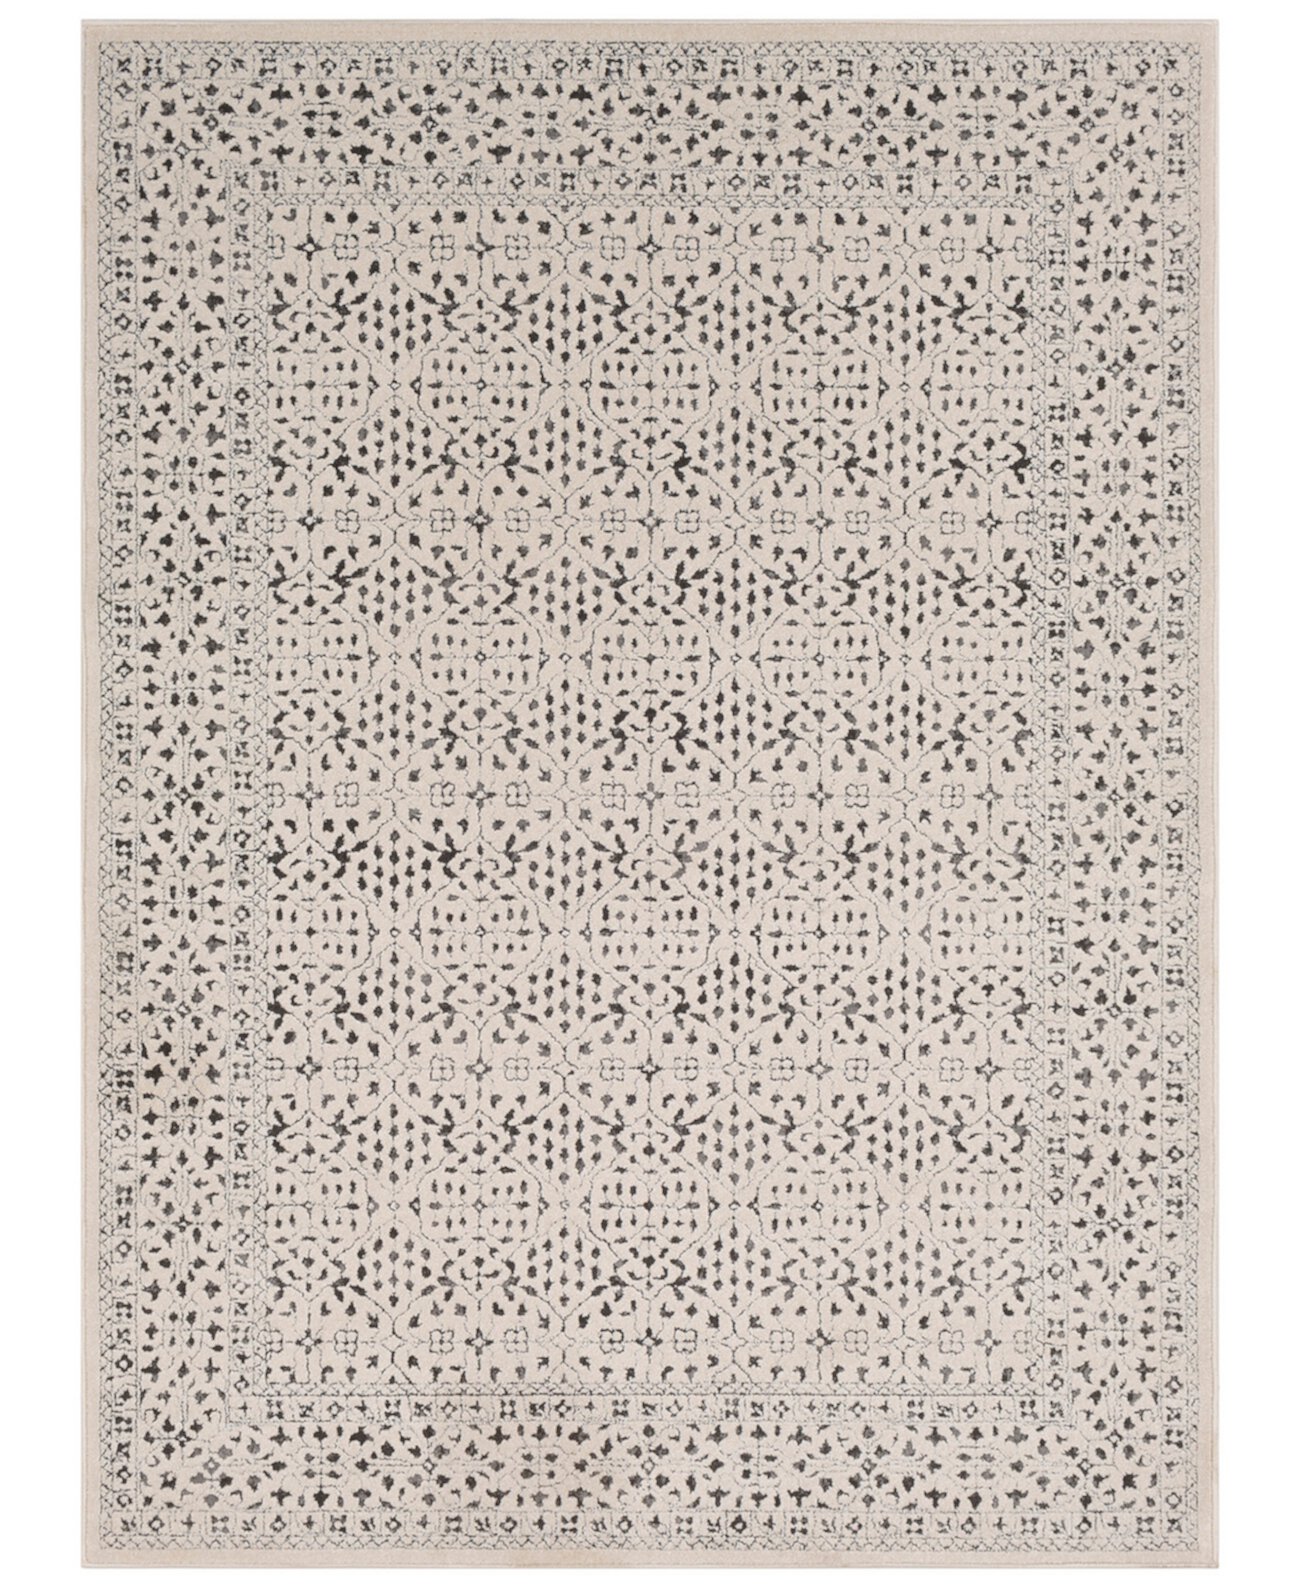 Bahar BHR-2308 Средне-серый коврик размером 5 футов 3 x 7 футов 3 дюйма Surya